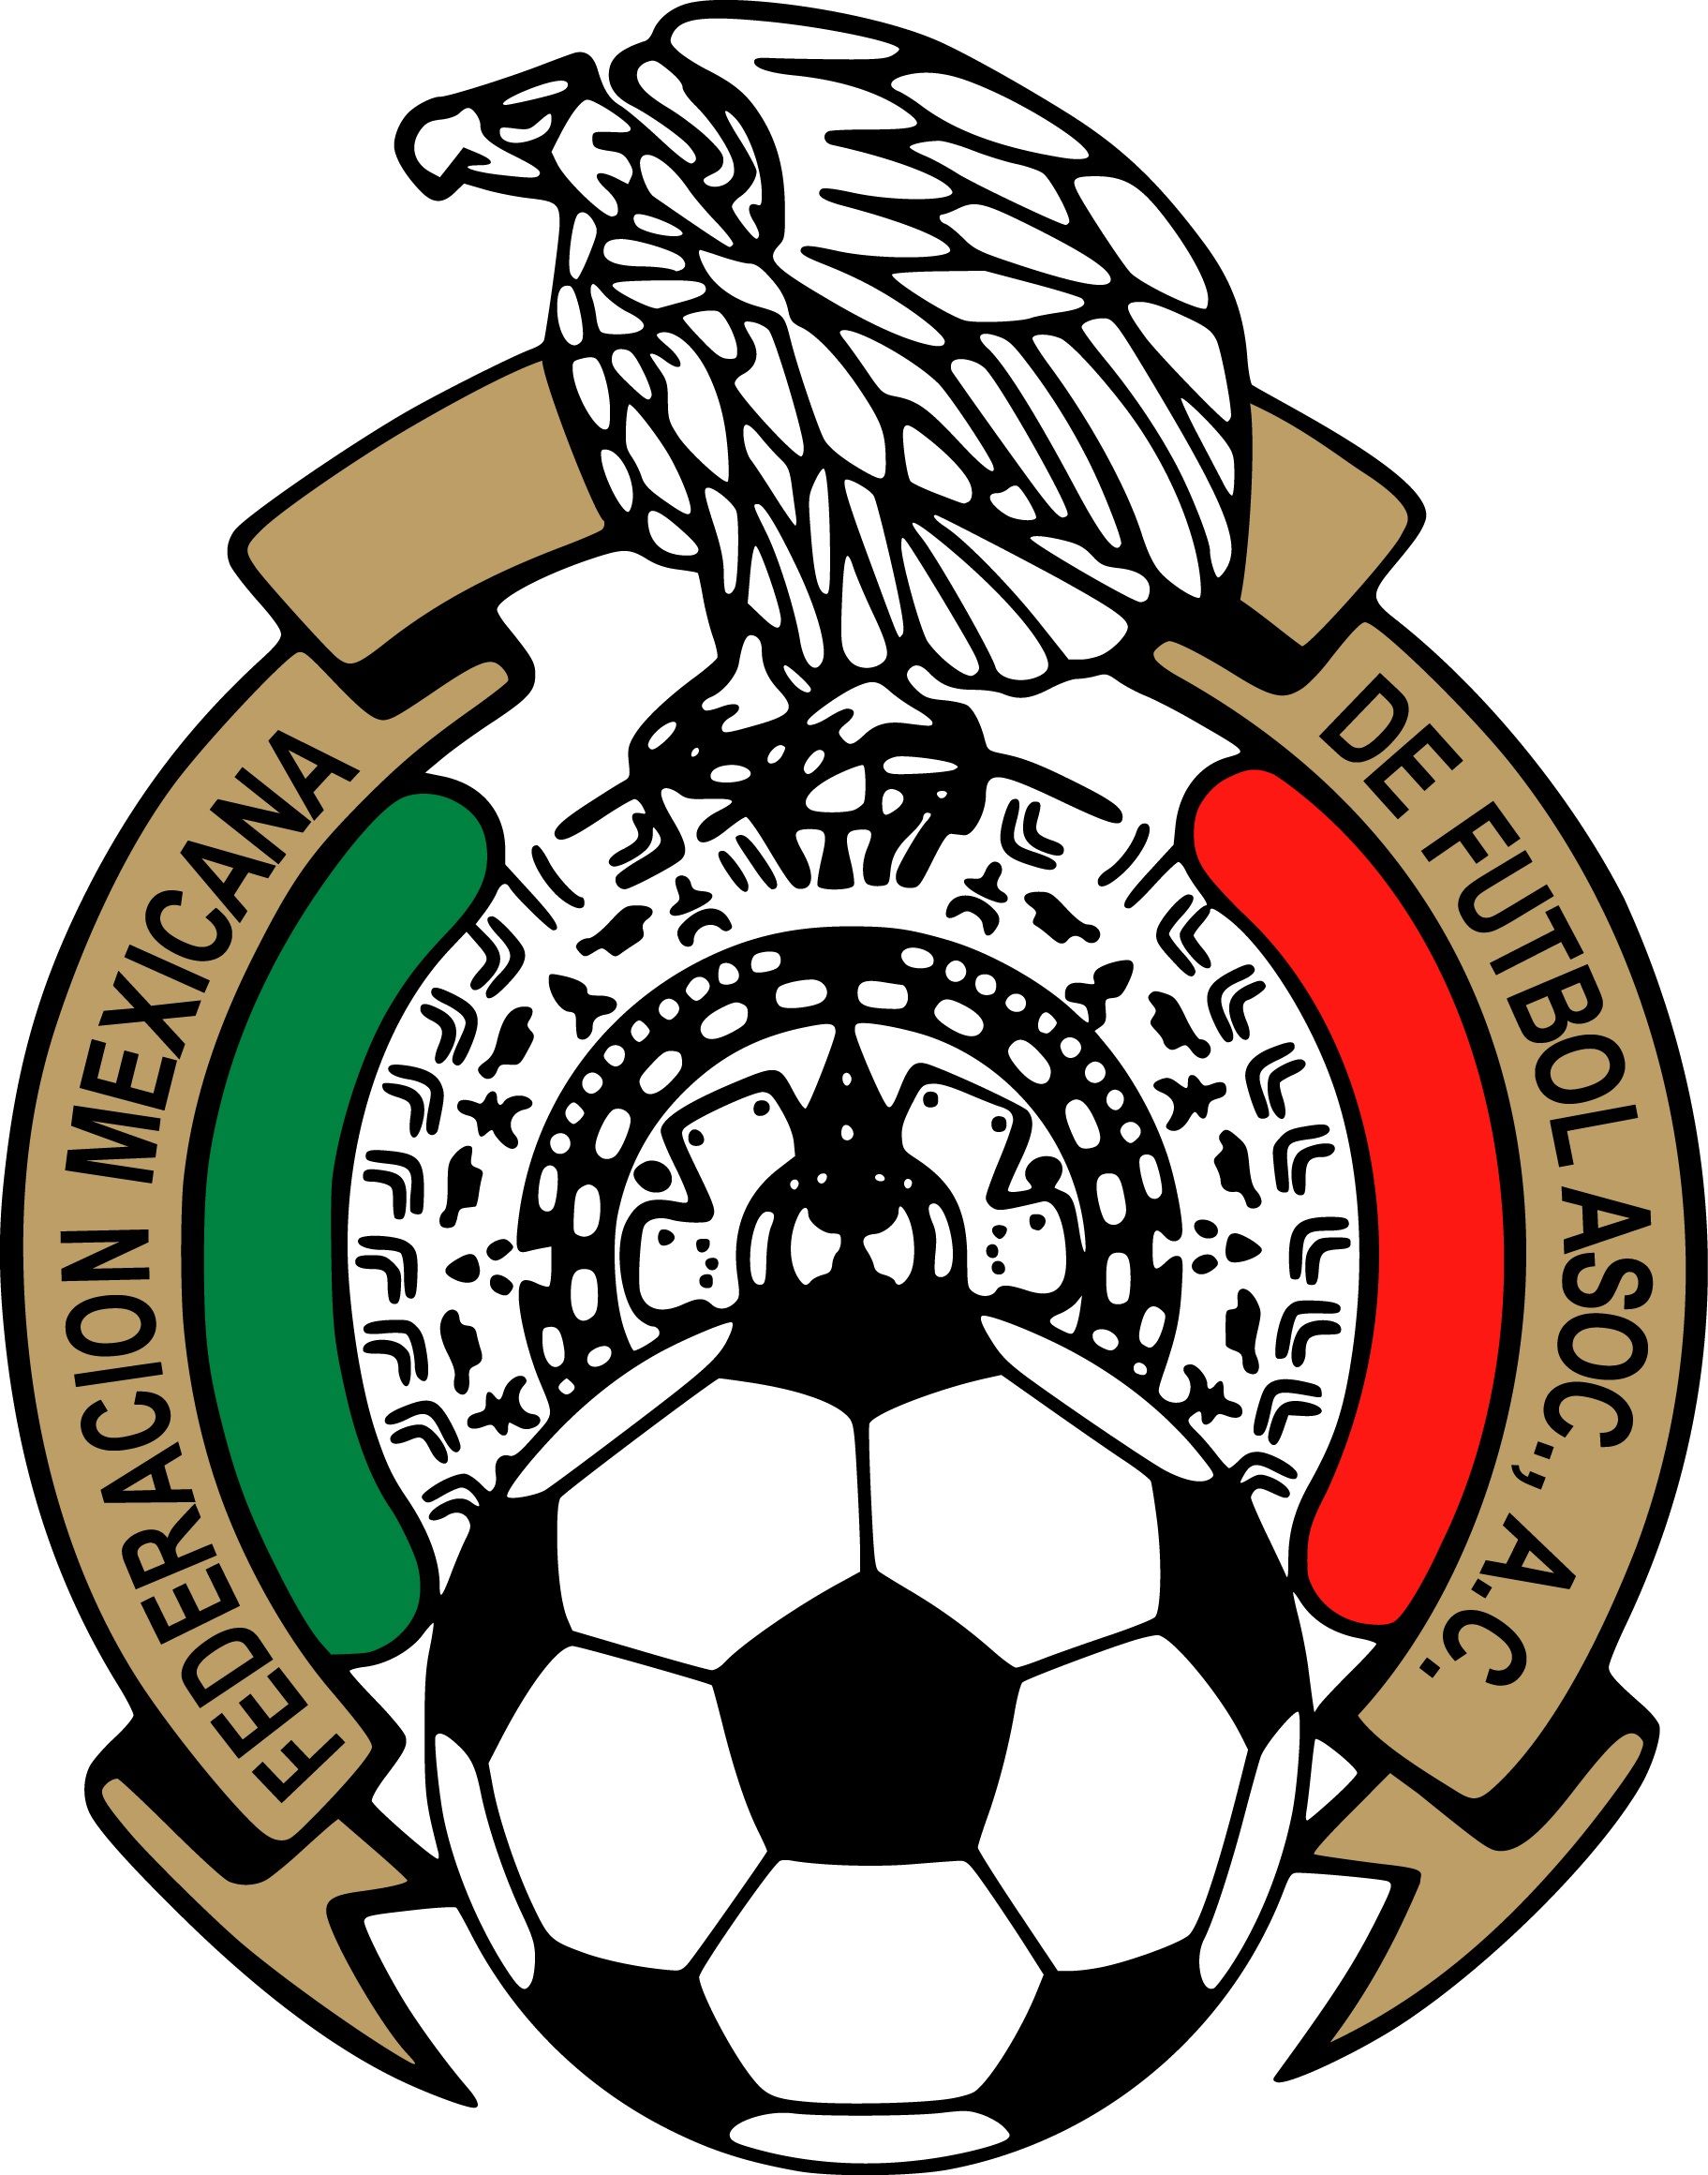 Mexican Football Federation & Mexico National Football Team Logo. Mexico football team, Football team logos, Mexico soccer